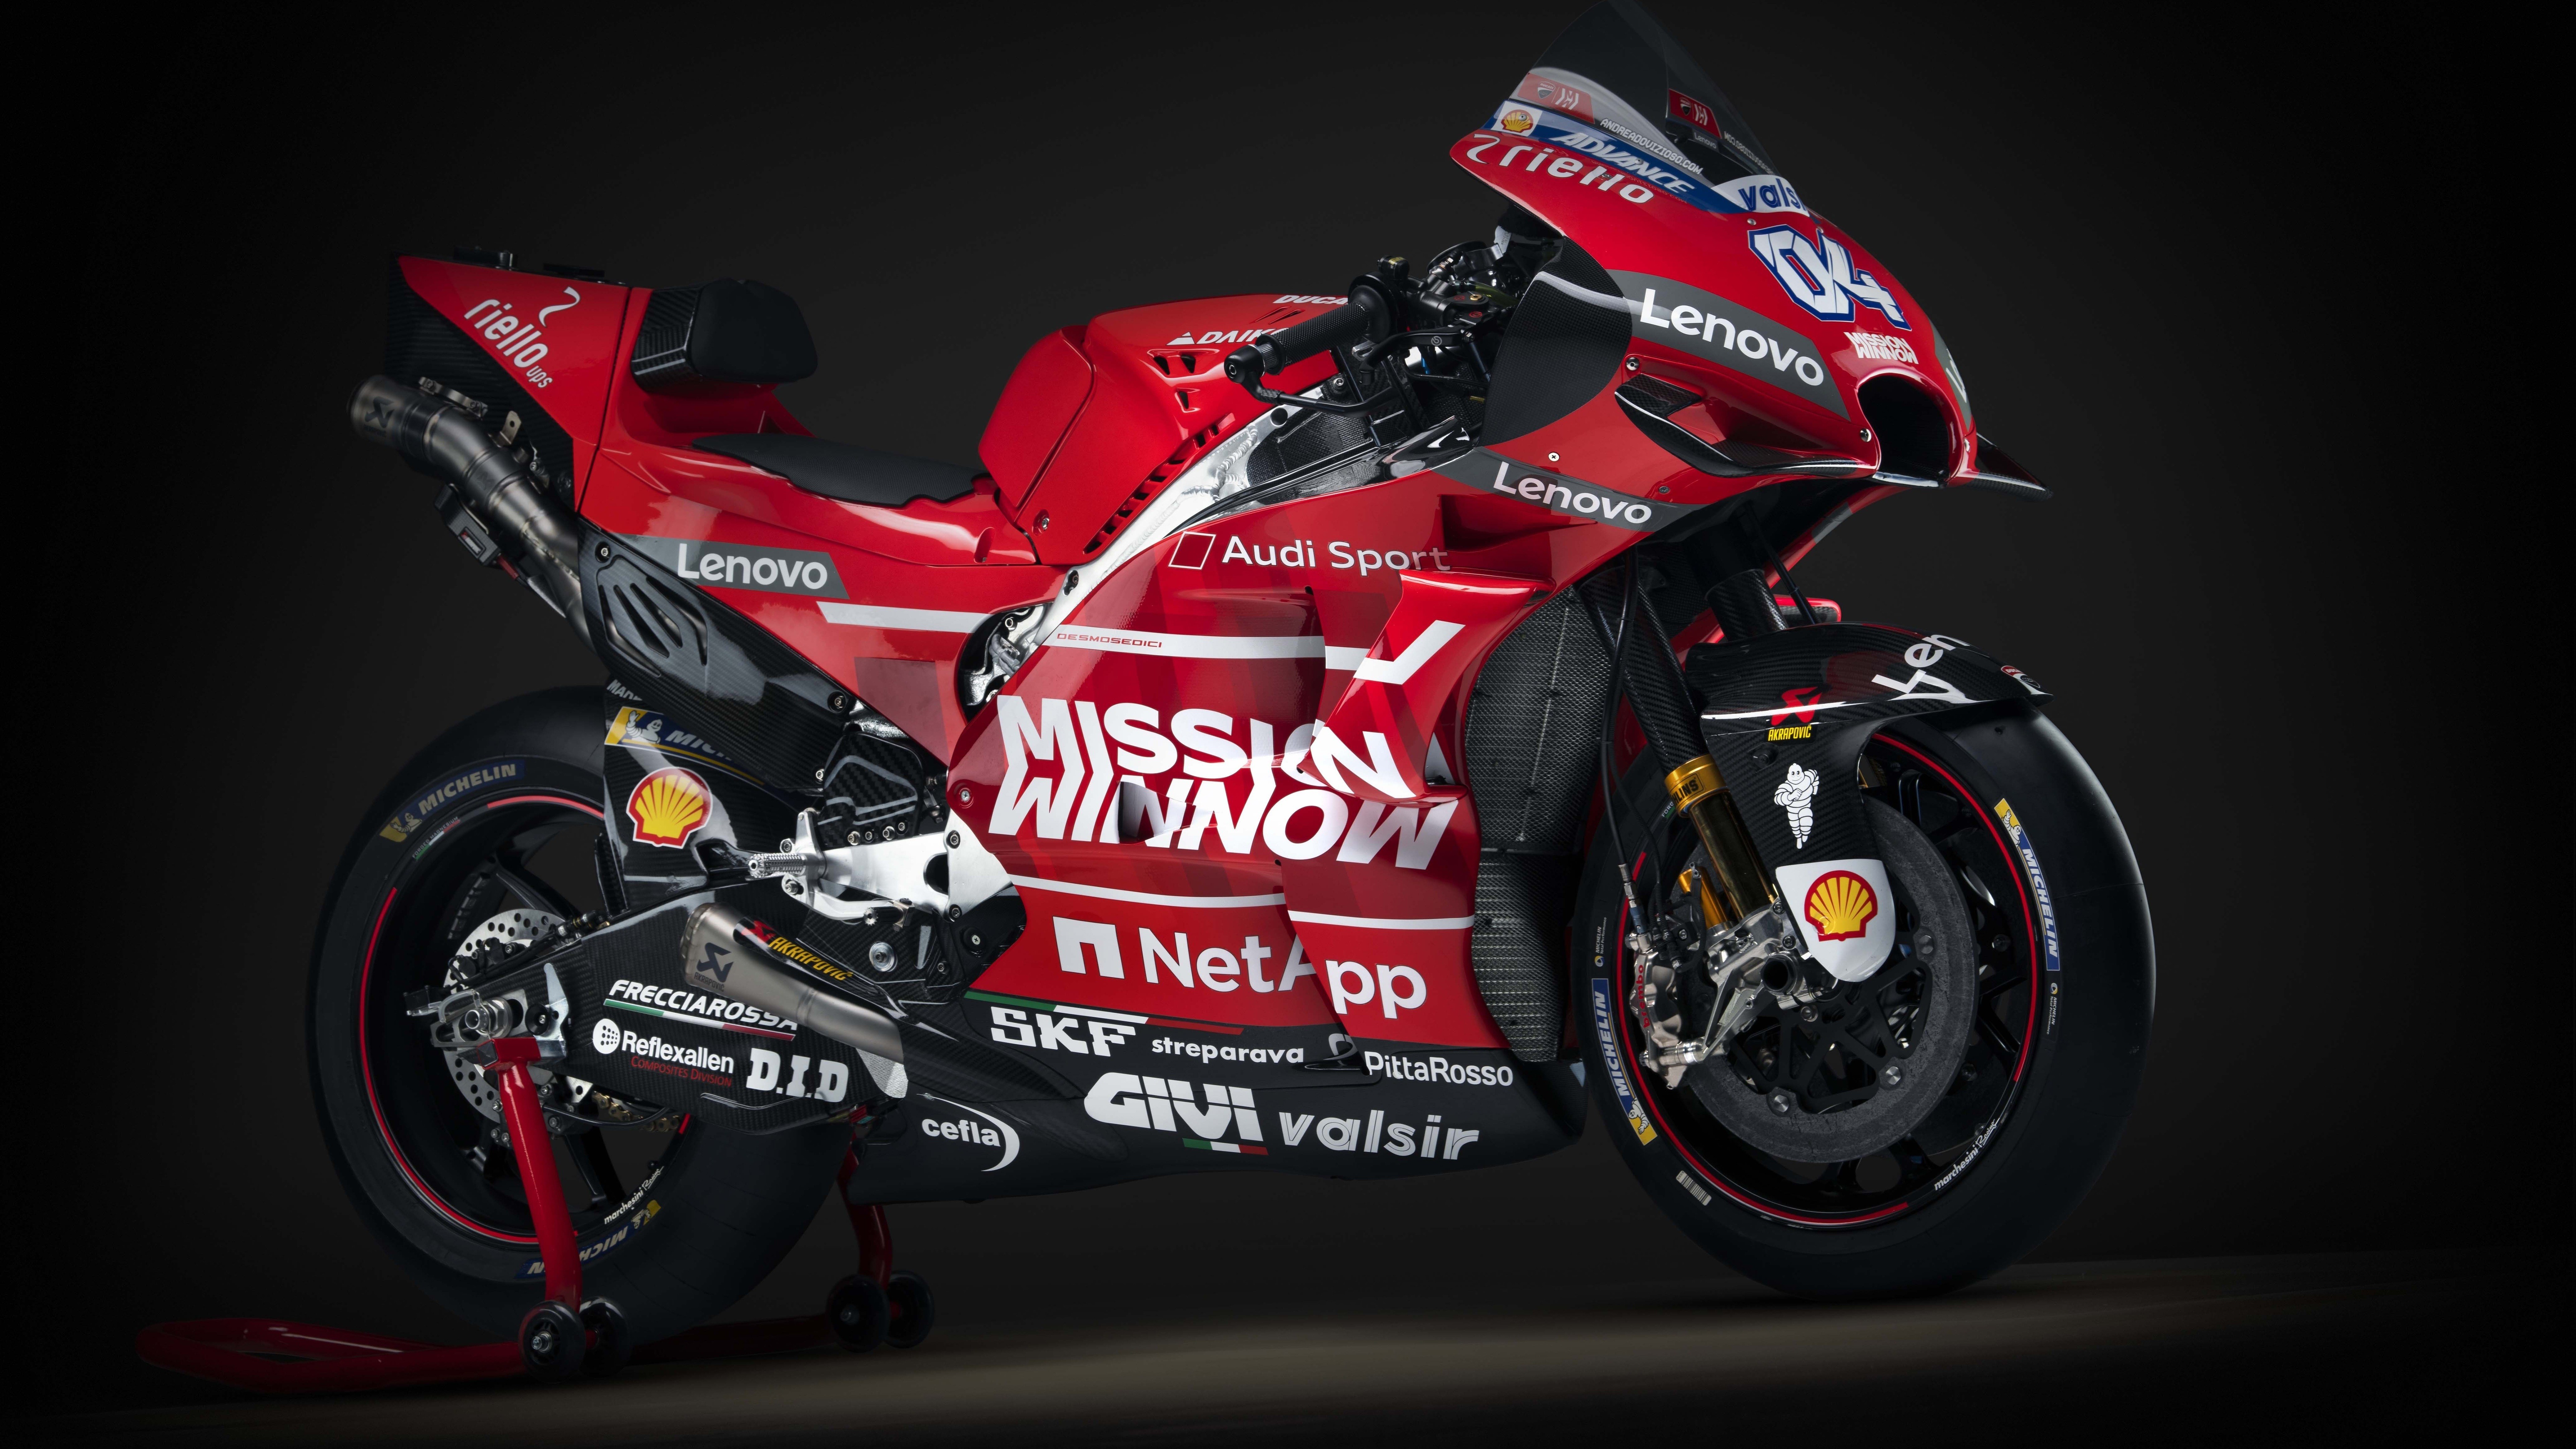 8K Wallpaper of 2019 Ducati Desmosedici GP19 Motogp Race Bike HD